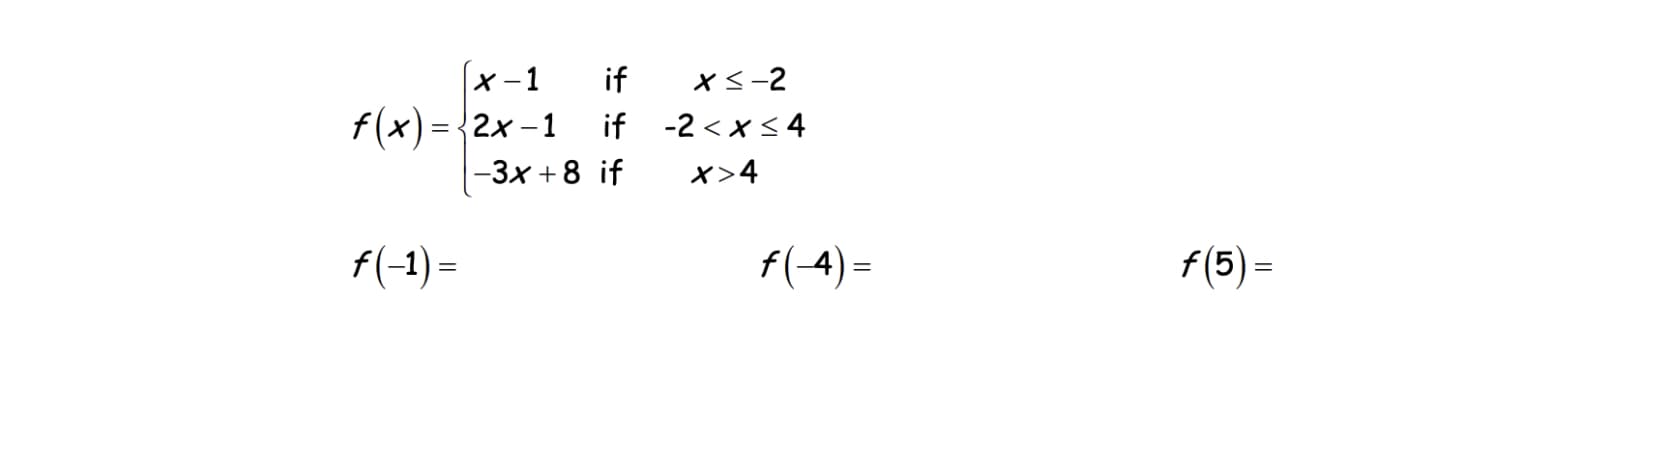 (x-1
f(x)= {2x -1
|-3x +8 if
if
xs-2
if -2 < x< 4
x>4
f(-1) =
f(-4) =
f (5) =
